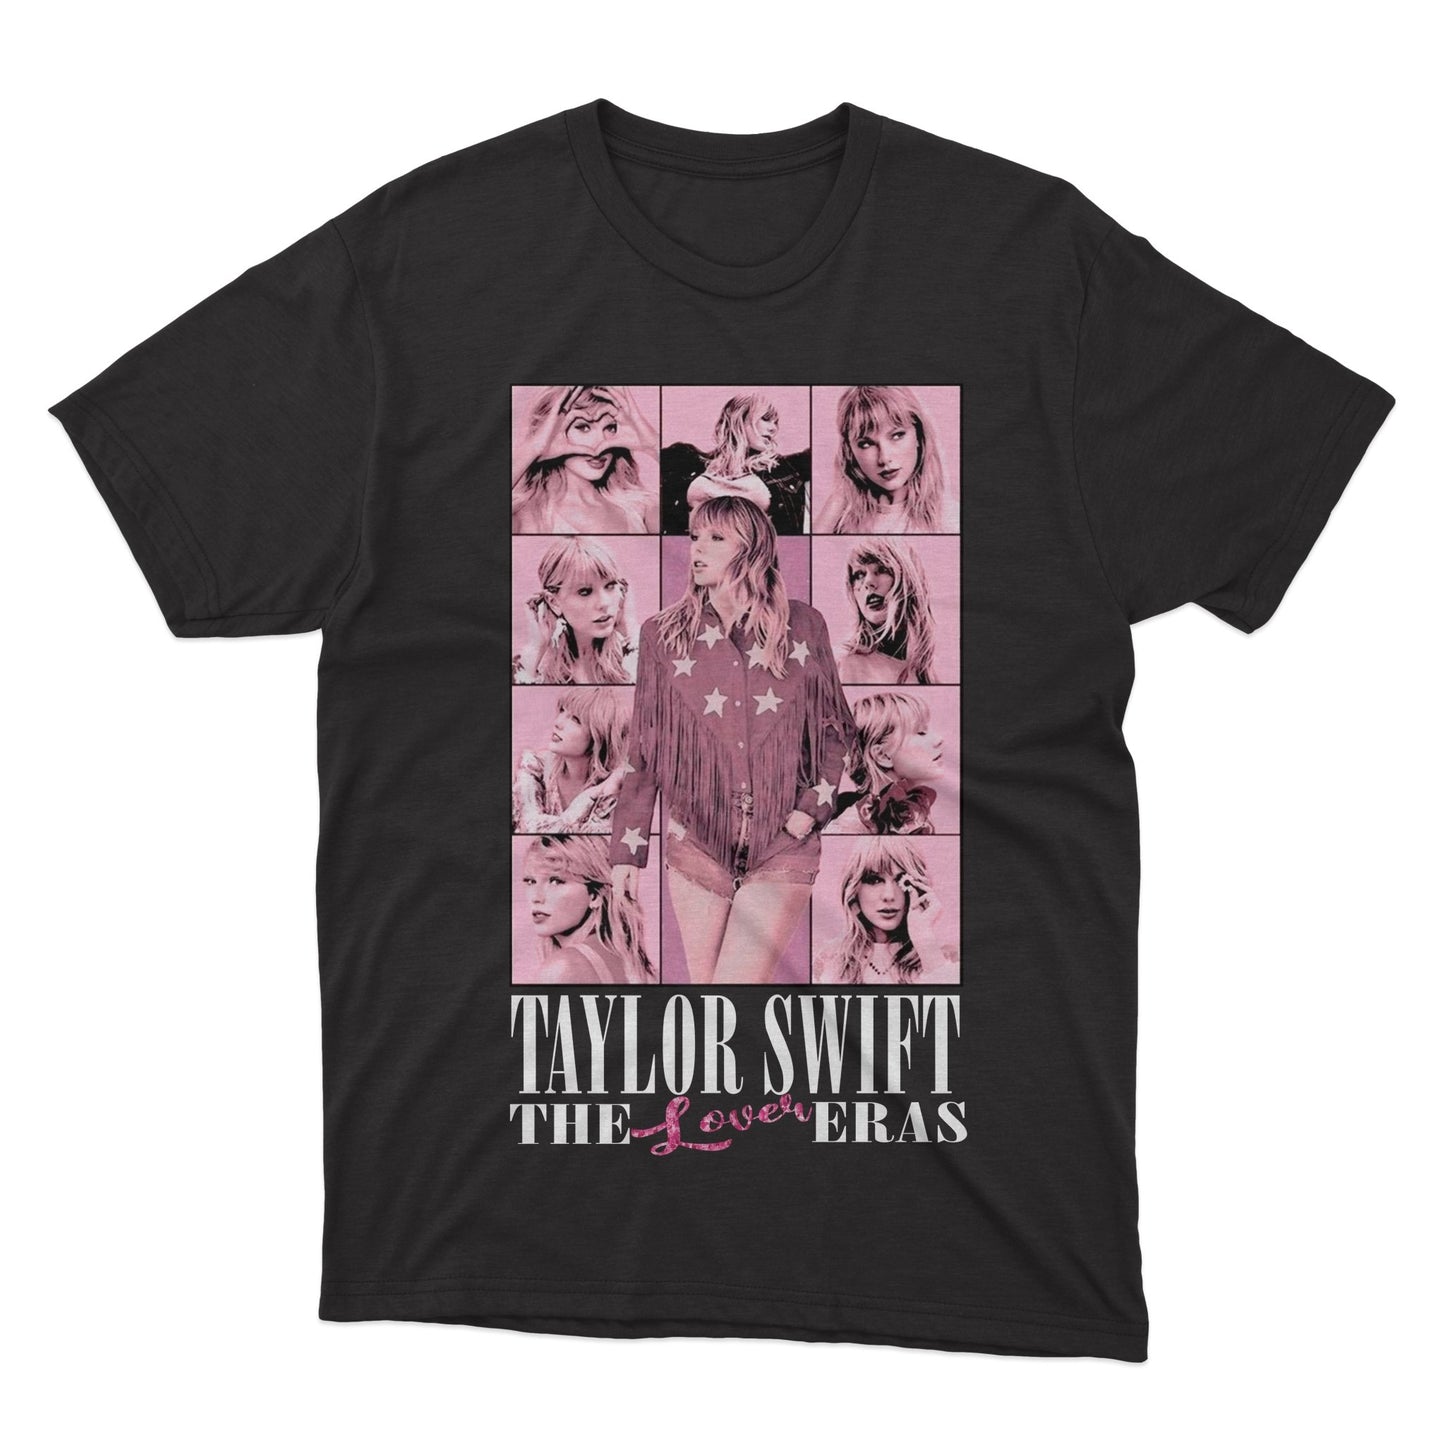 Camiseta Eras Taylor - Comprar em Garota Hipster Store